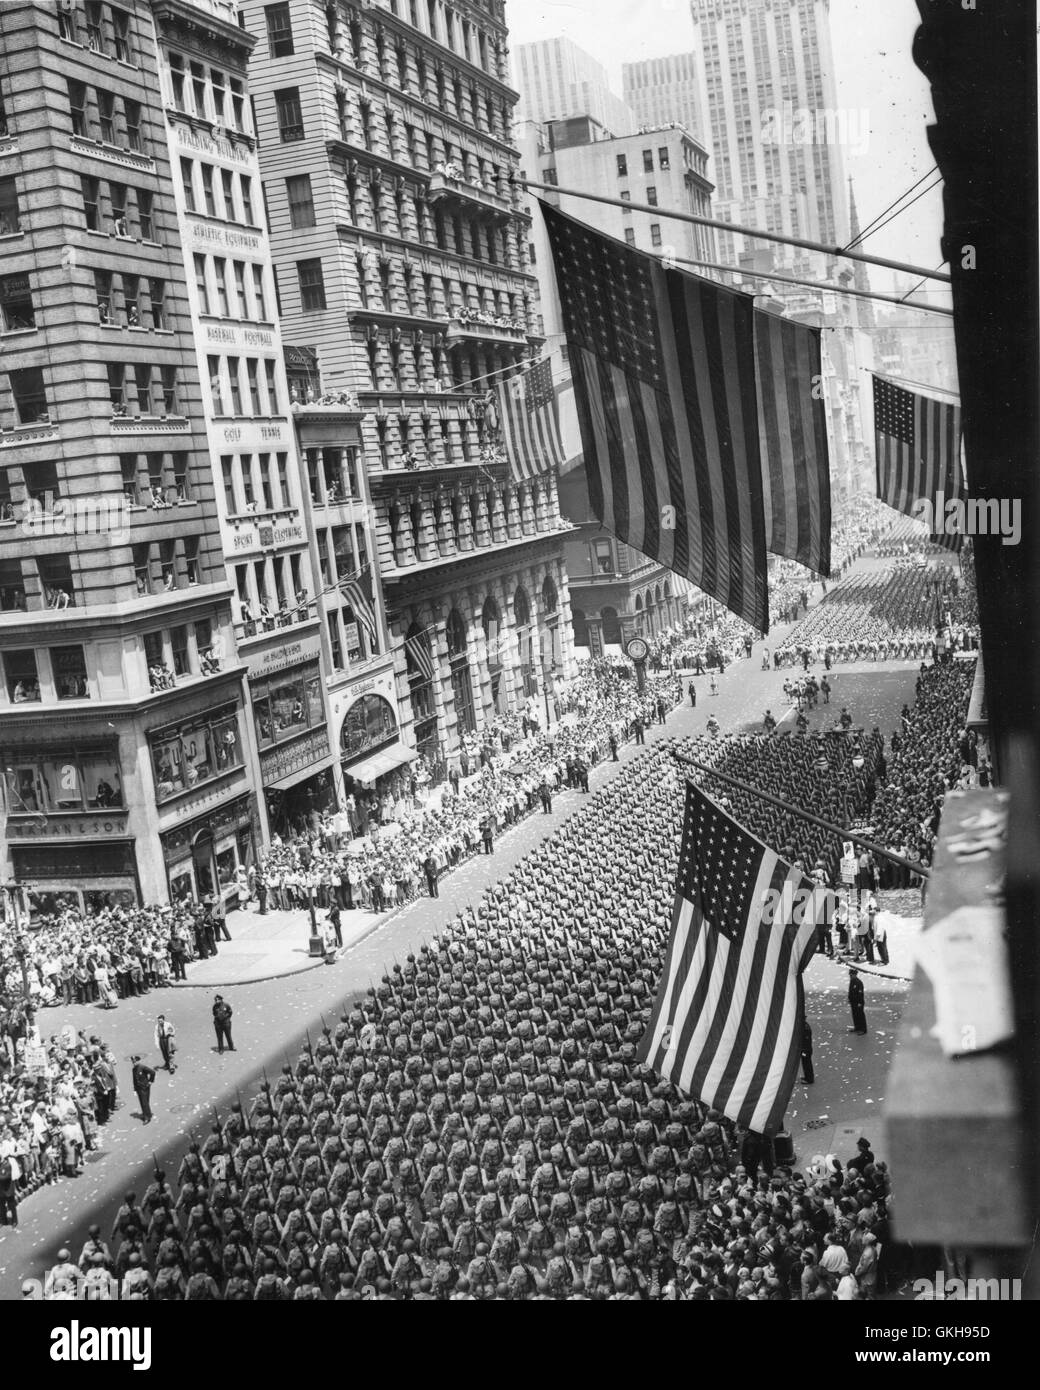 Les hommes de la Deuxième Division, l'armée des États-Unis, en mars au cours de la Cinquième Avenue à New York 'guerre' parade. Banque D'Images